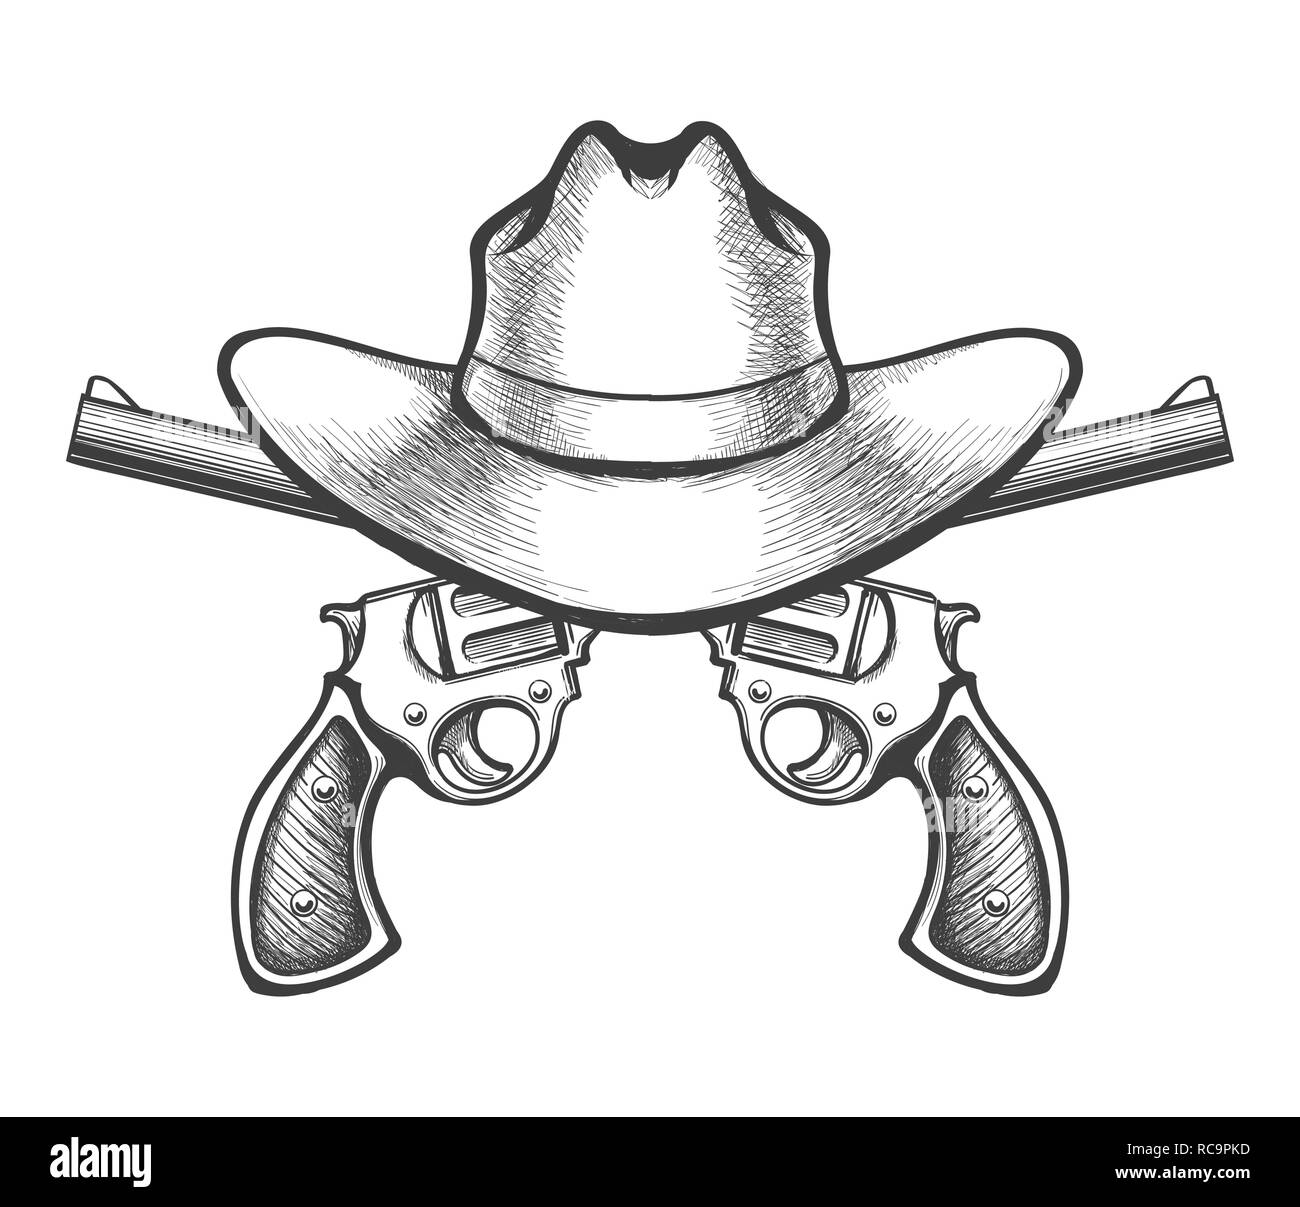 Chapeau de cowboy et une paire de pistolet revolver revolver dessiné dans un style fait main. Vector illustration. Illustration de Vecteur